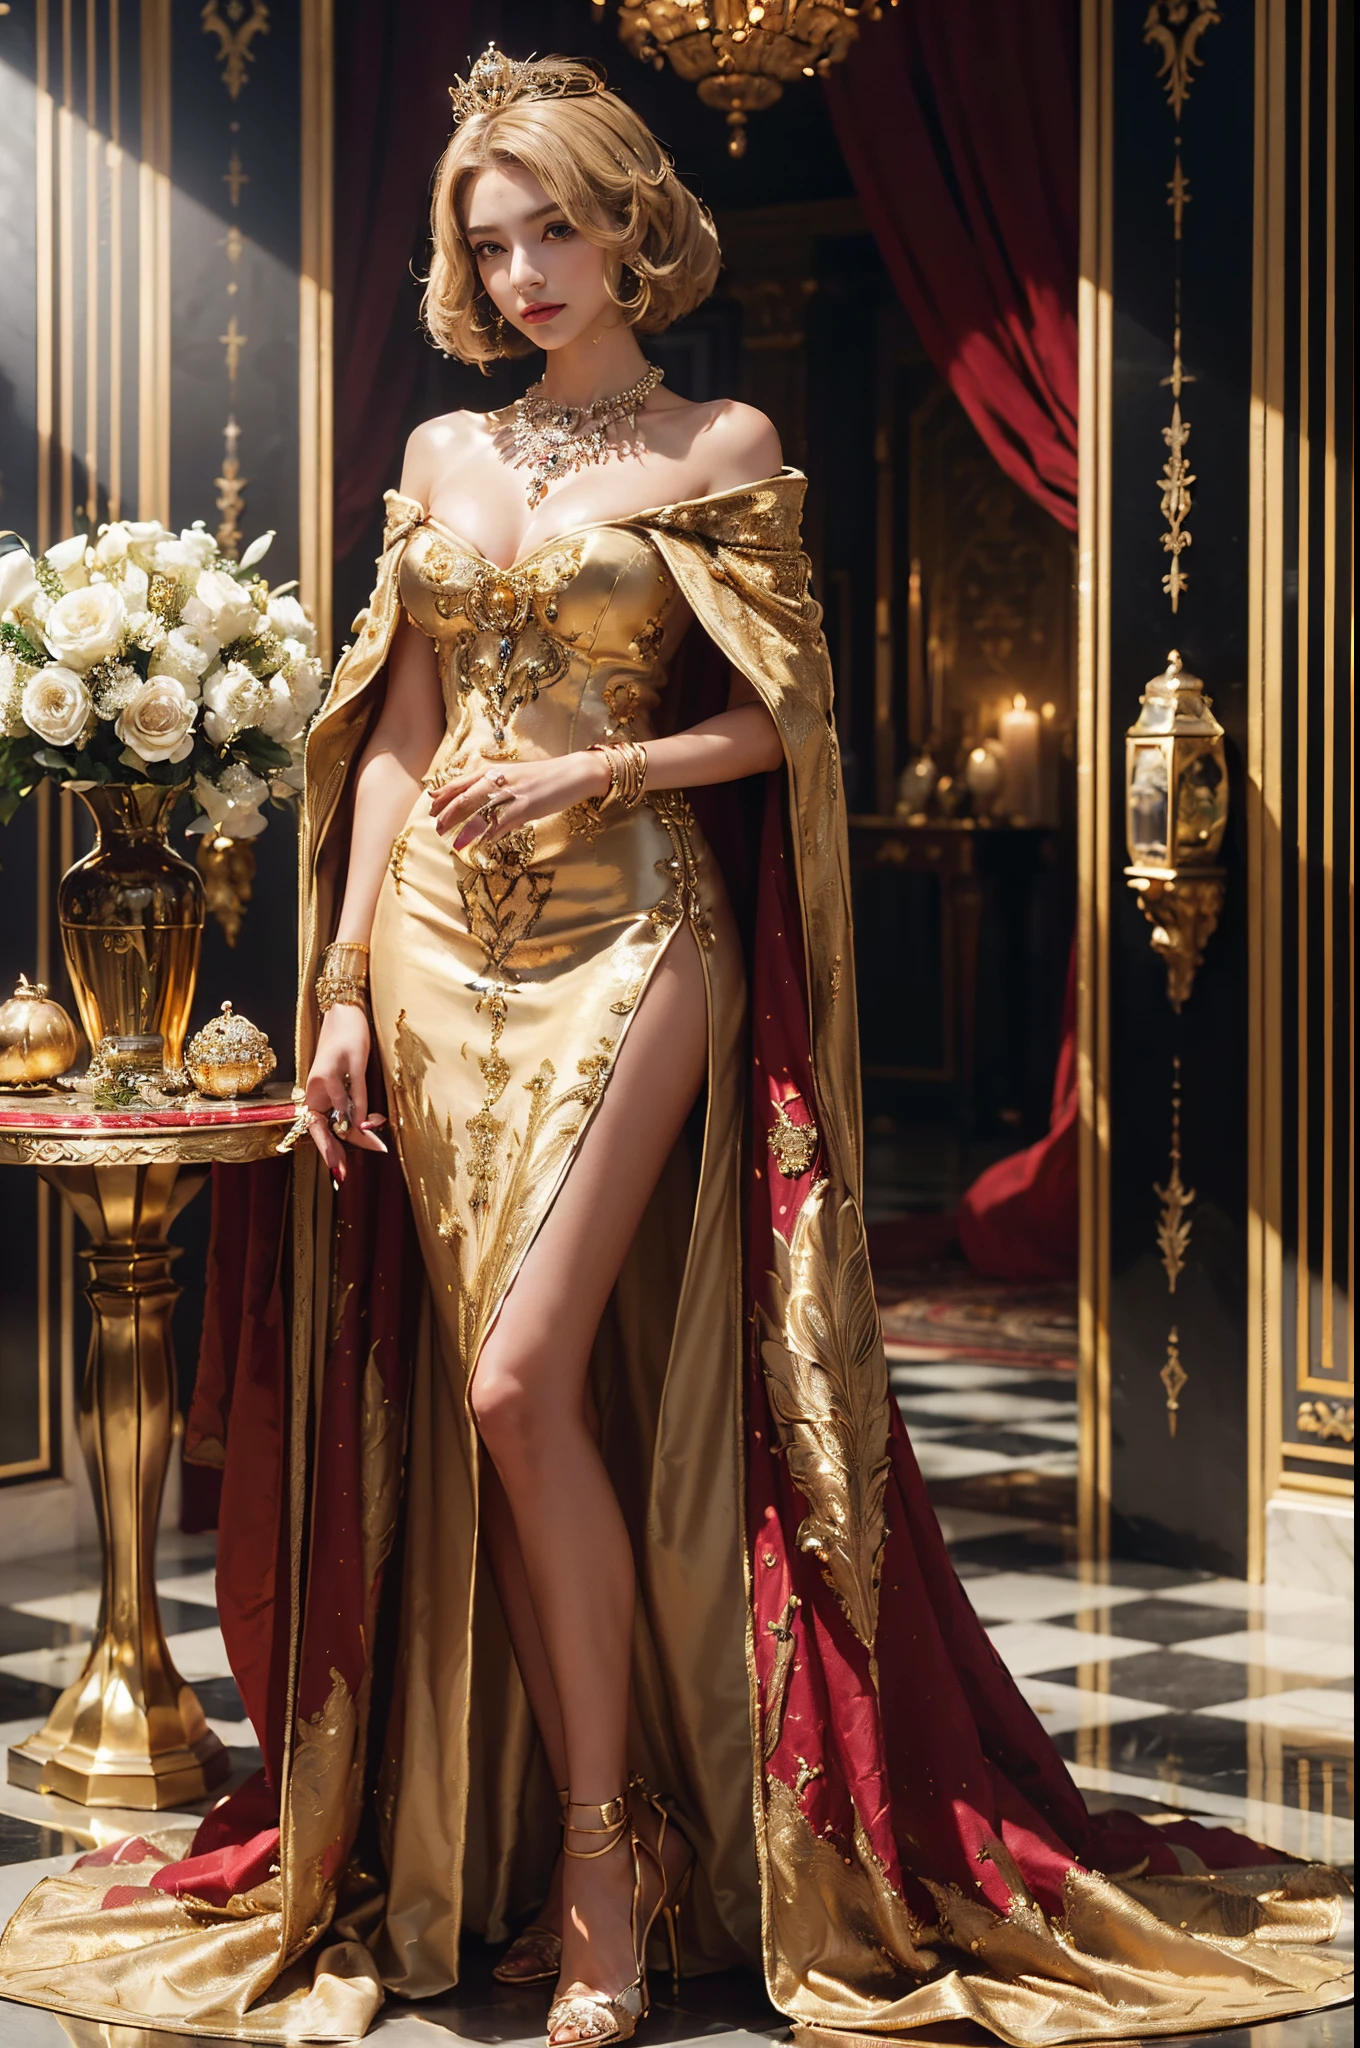 (прекрасная королева, средние волосы боб, стоять в Королевском зале, (роскошная корона), (Роскошный плащ), носить (детальная роскошная заколка для волос), (подробное роскошное платье королевы), (роскошные высокие каблуки), (детальный орнамент), (Детальные аксессуары), дорогое детальное колье, золотая ваза для цветов на роскошном столе, роскошный флакон духов, роскошный настенный орнамент, роскошное окно с золотой рамой, роскошный королевский зал, Подробная роскошная золотая лампа, роскошная свеча, красивое лицо, красивое лицо, красивые глаза, красивый нос, трассировка лучей, красивые пальцы, красивые руки, (роскошное украшение на руку), (роскошный браслет), (роскошное кольцо), (роскошное колье), (4 пальца в одной руке), фотография всего тела, красивый макияж, идеальная анатомия, хорошее освещение, профессиональная фотосессия